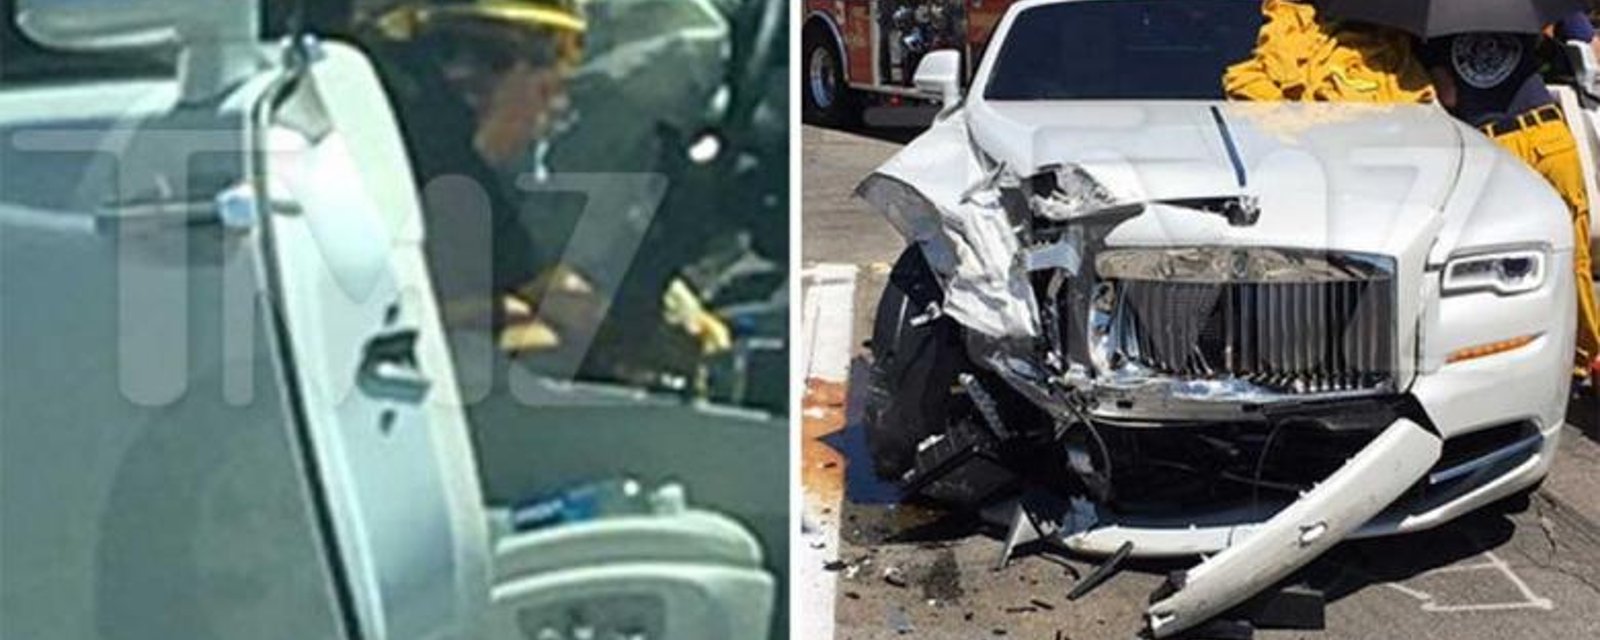 Une star blessée dans un sévère accident de voiture à Los Angeles